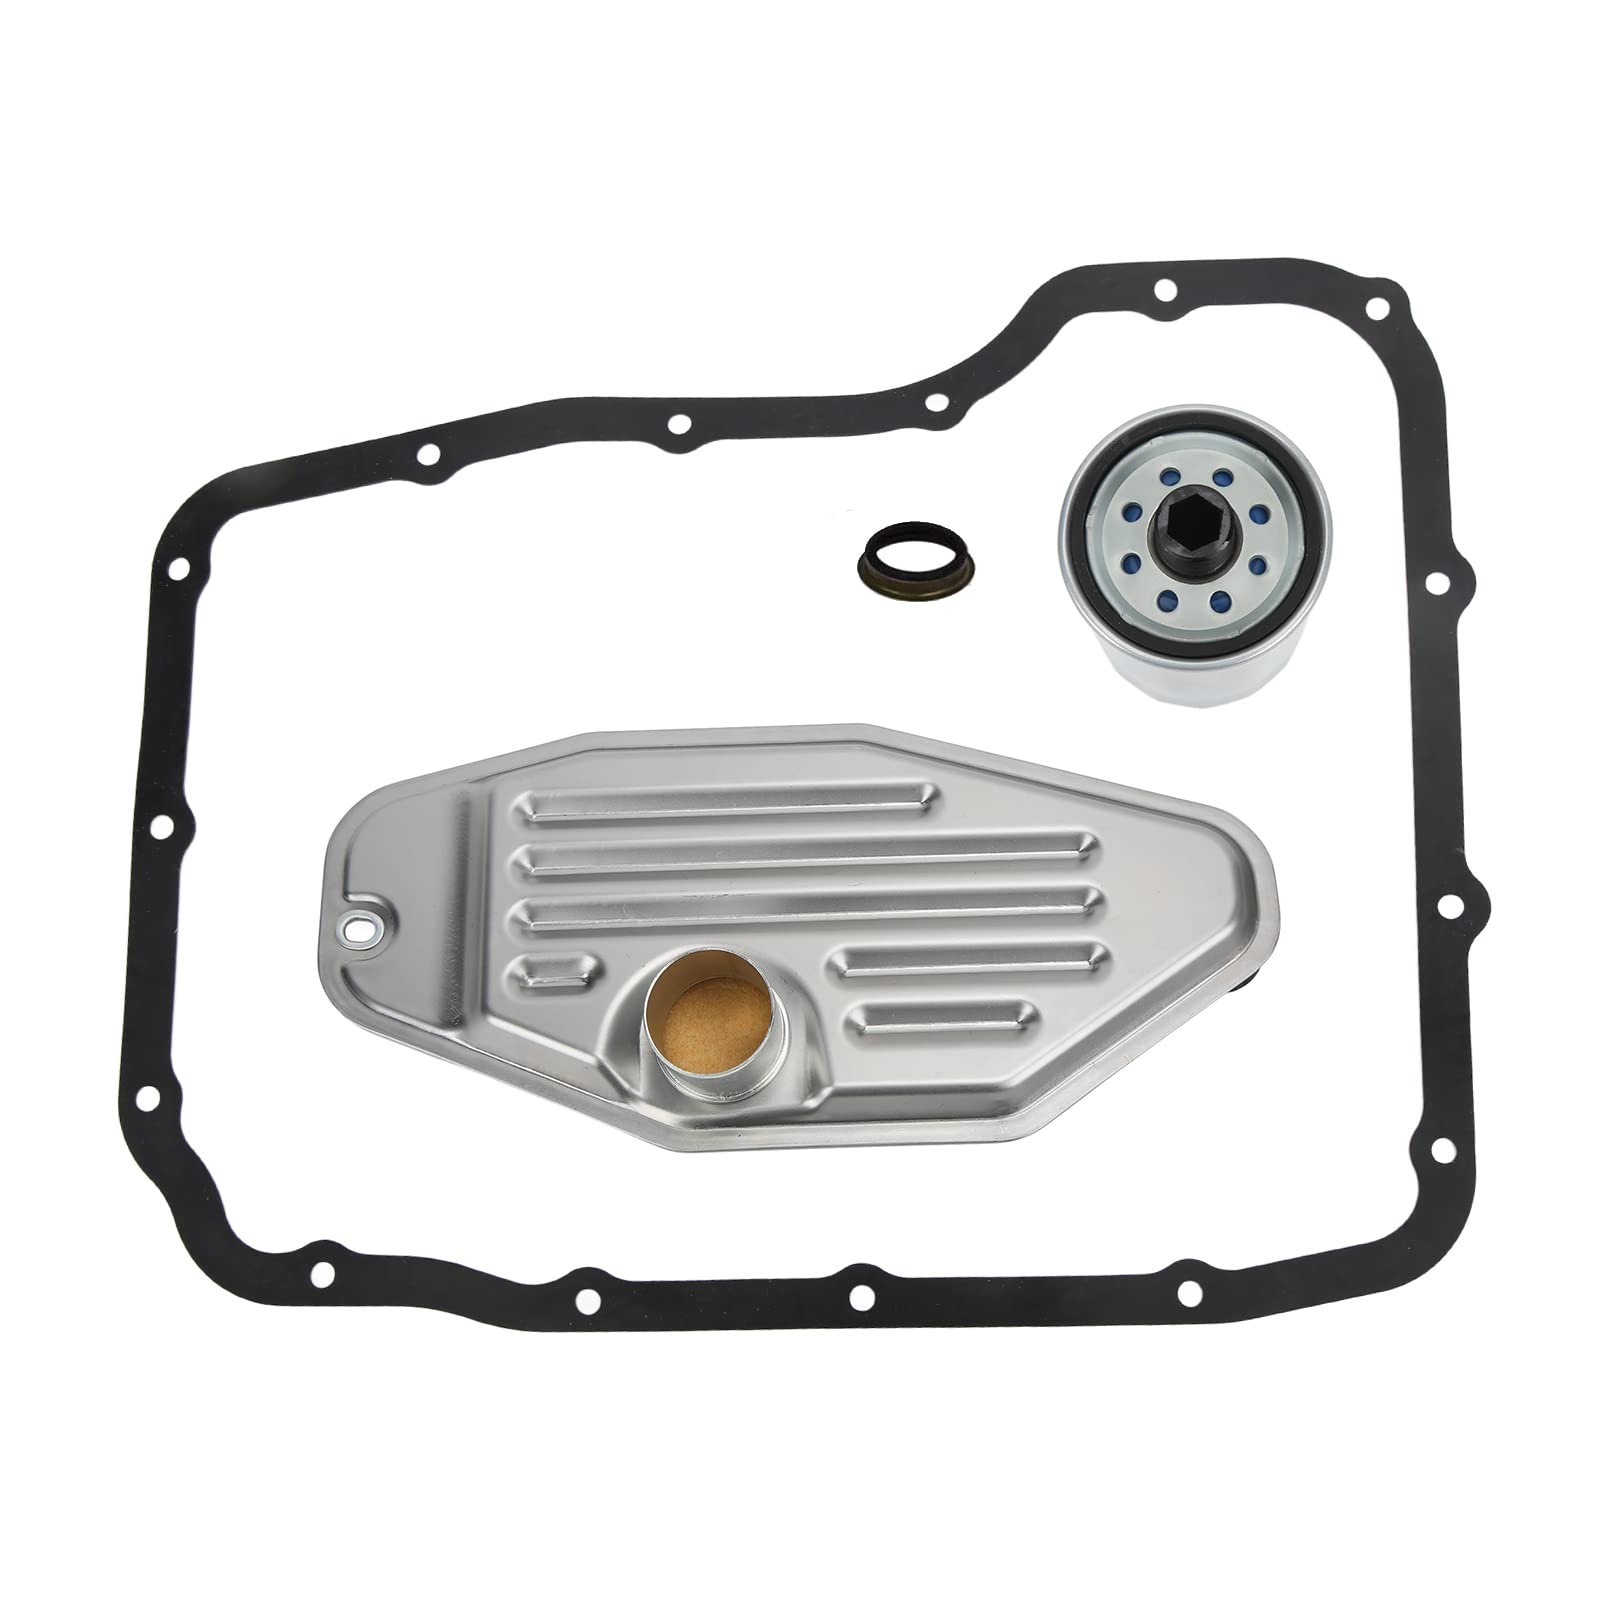 Aramox Getriebefilter-Kit Passend für DAKOTA DURANGO RAM 1500, Getriebefilter-Kit 5013470AE Autozubehör-Ersatz von Aramox